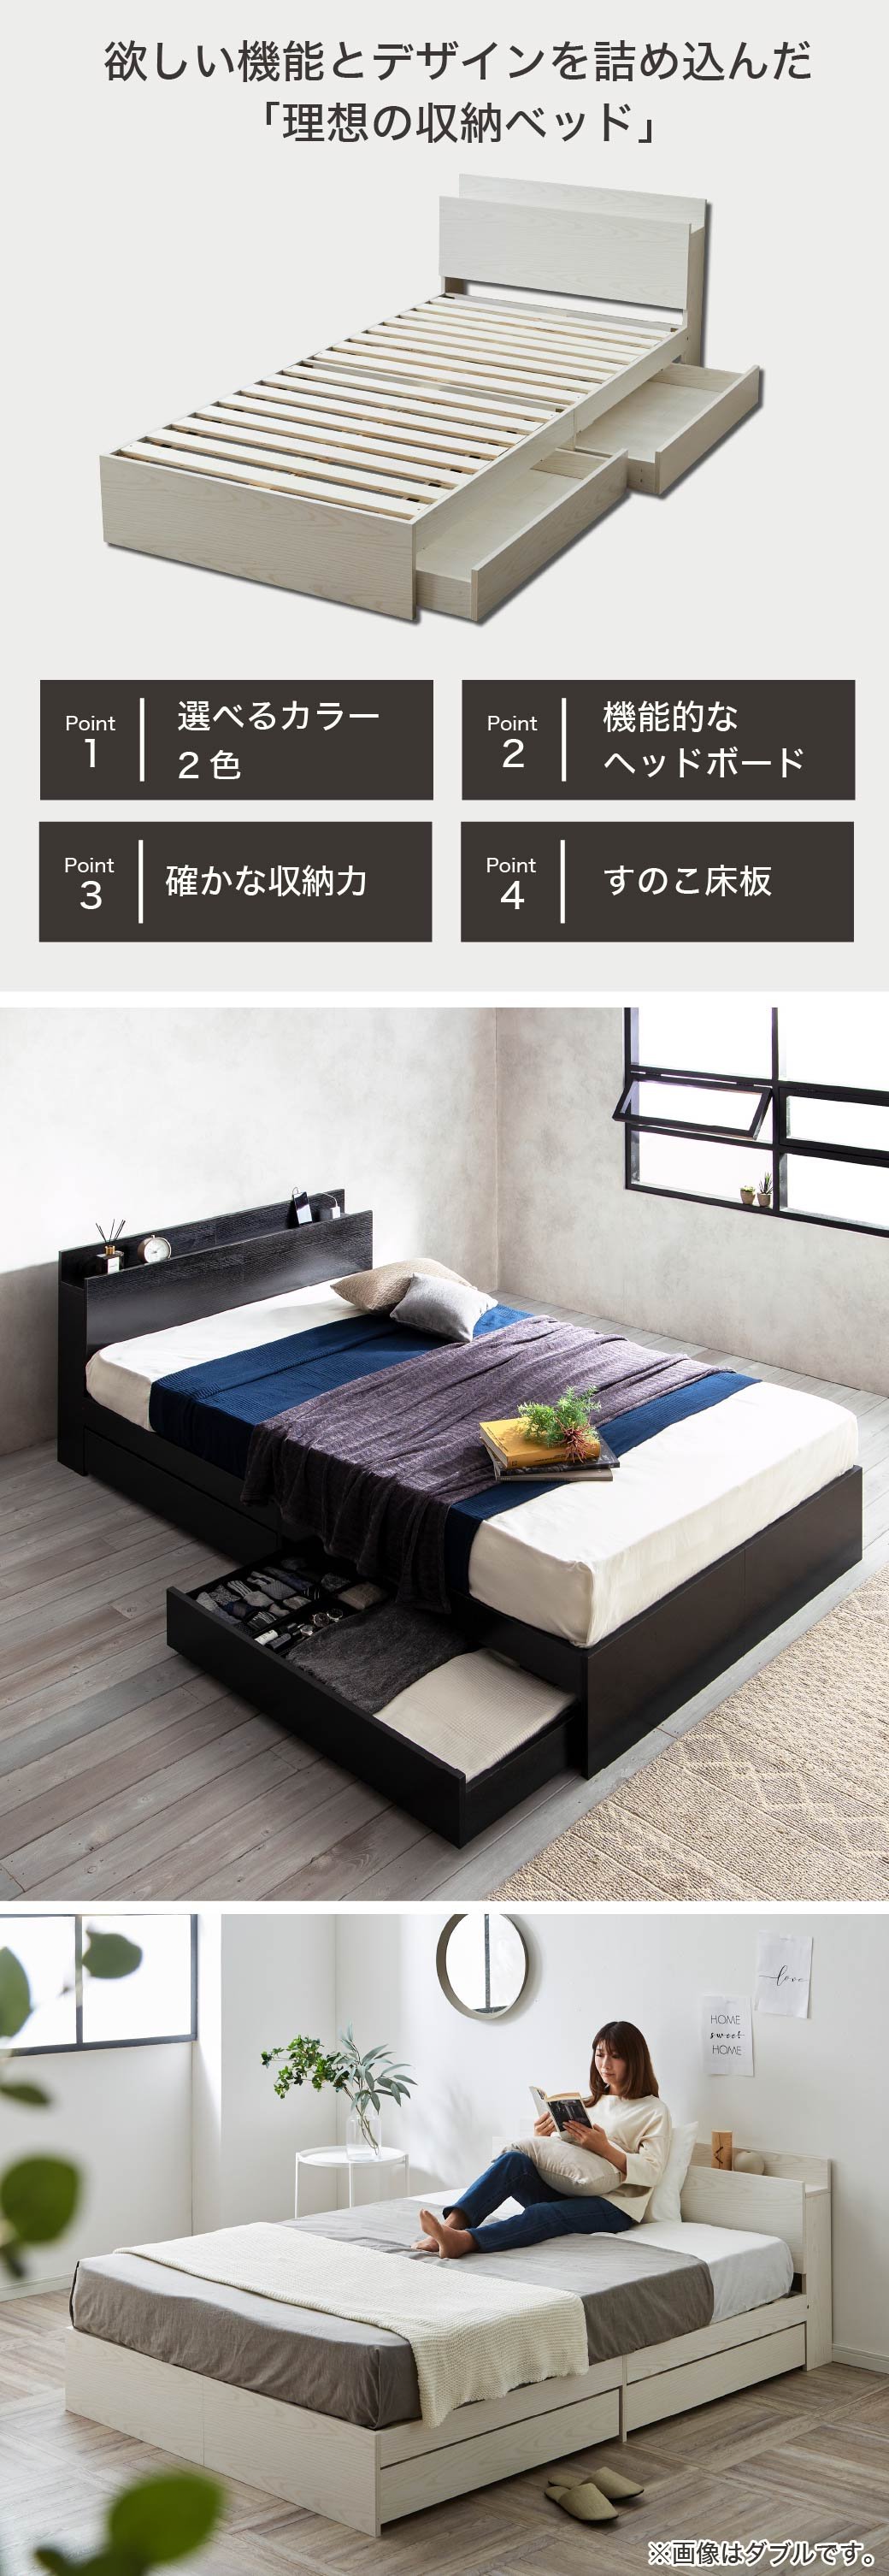 「本当に満足するベッドを選んでほしい」収納ベッドをお探しの方へおすすめの引き出し付きベッドです